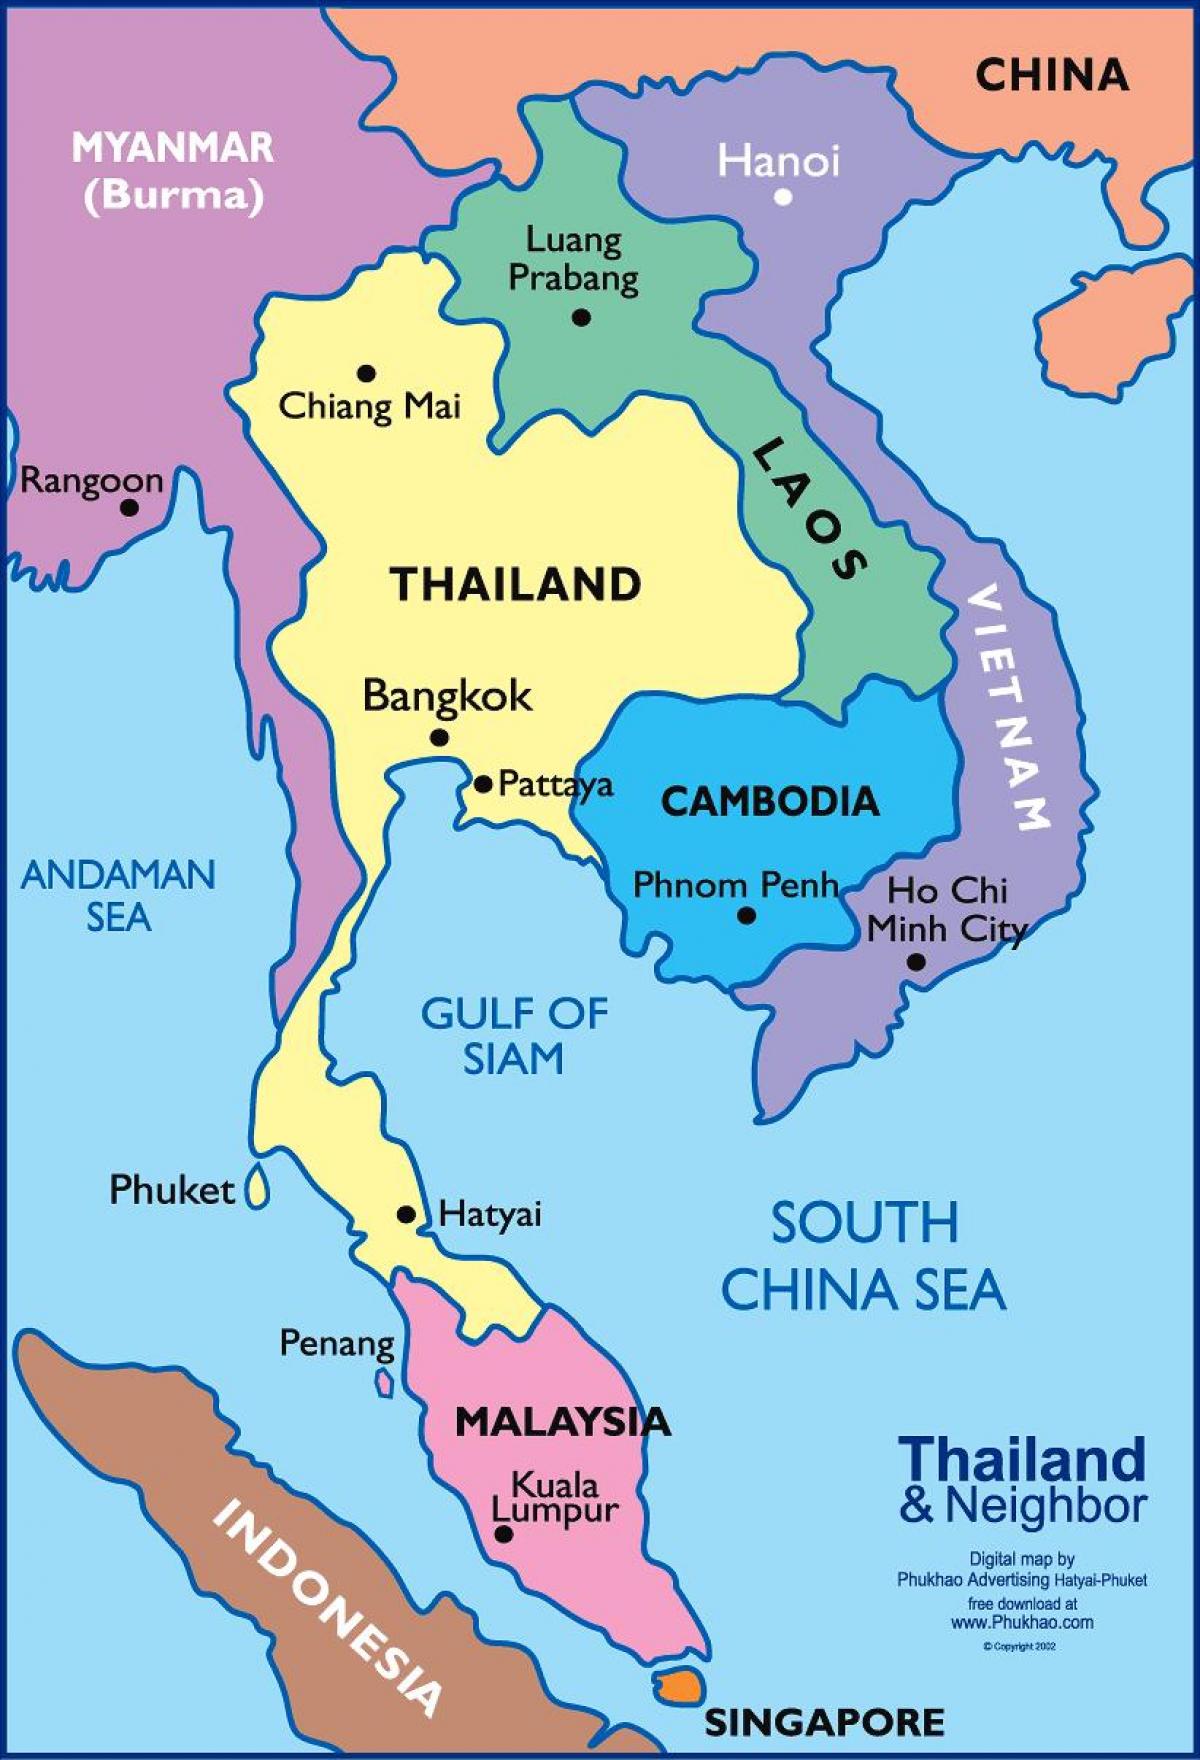 बैंकॉक के नक्शे स्थान